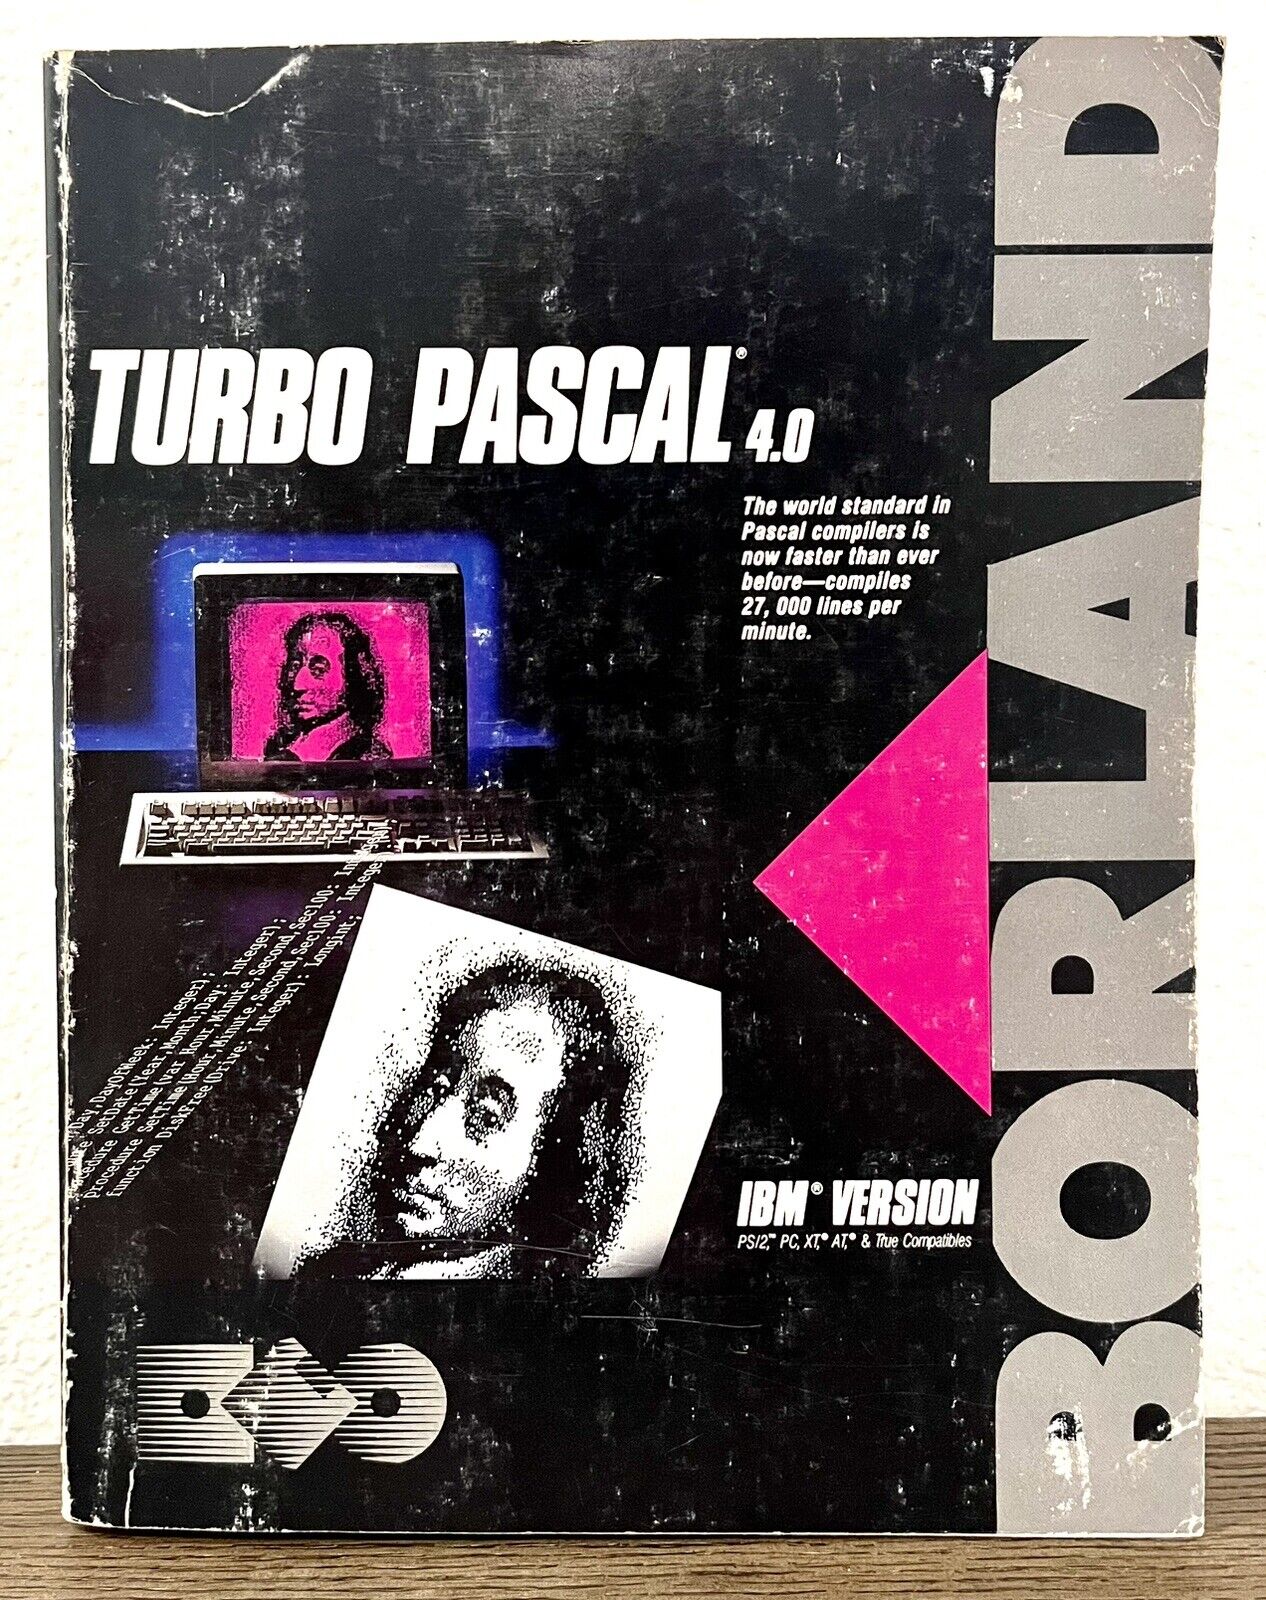 Vintage Borland Turbo Pascal 4.0 IBM Version PSI2, PC, XT, AT,  1987